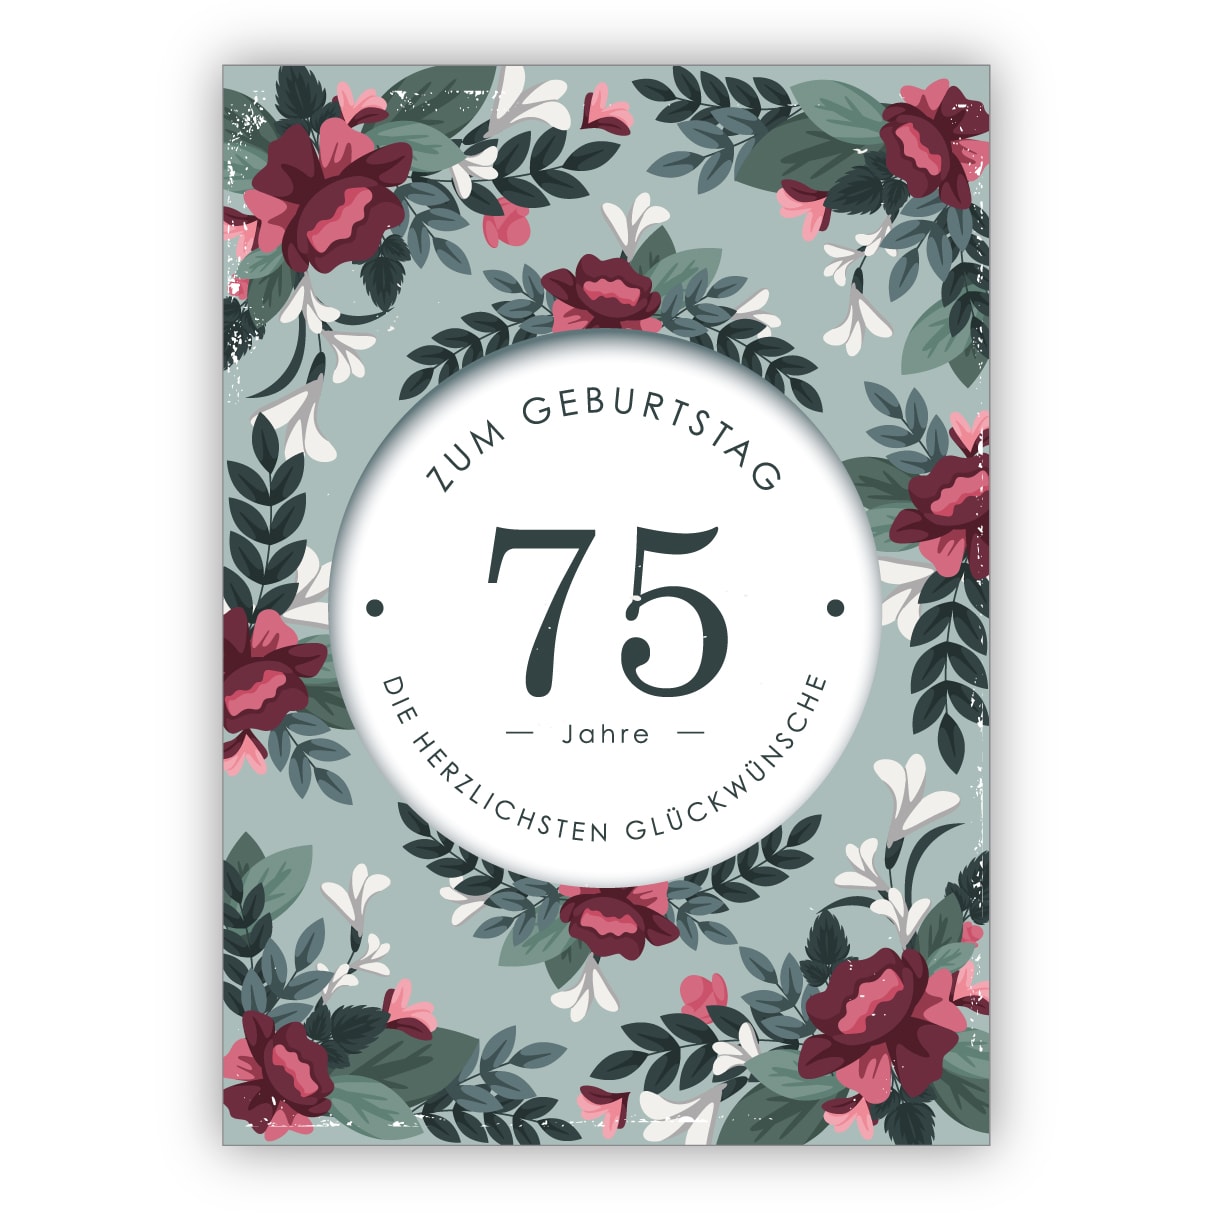 Große Glückwunsch Gruß-Karte 75 Geburtstag Design A4 XXL Umschlag edel modern